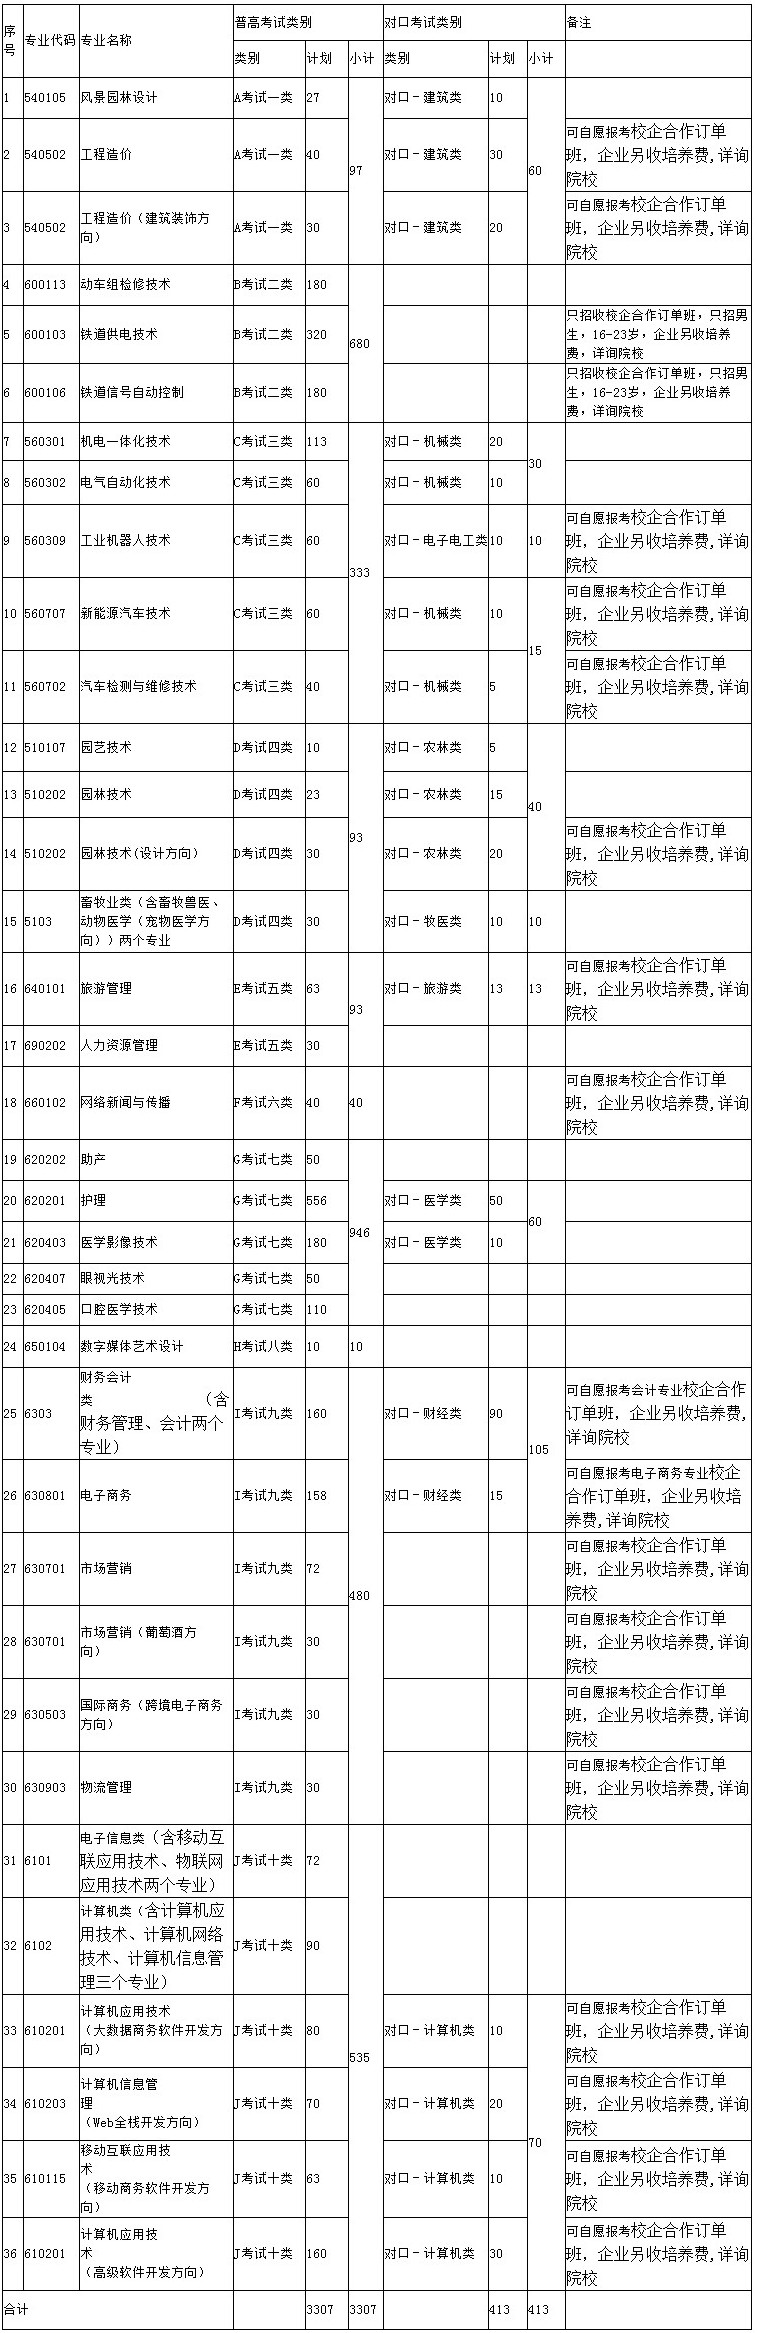 唐山职业技术学院2019年单招招生专业及计划表.jpg